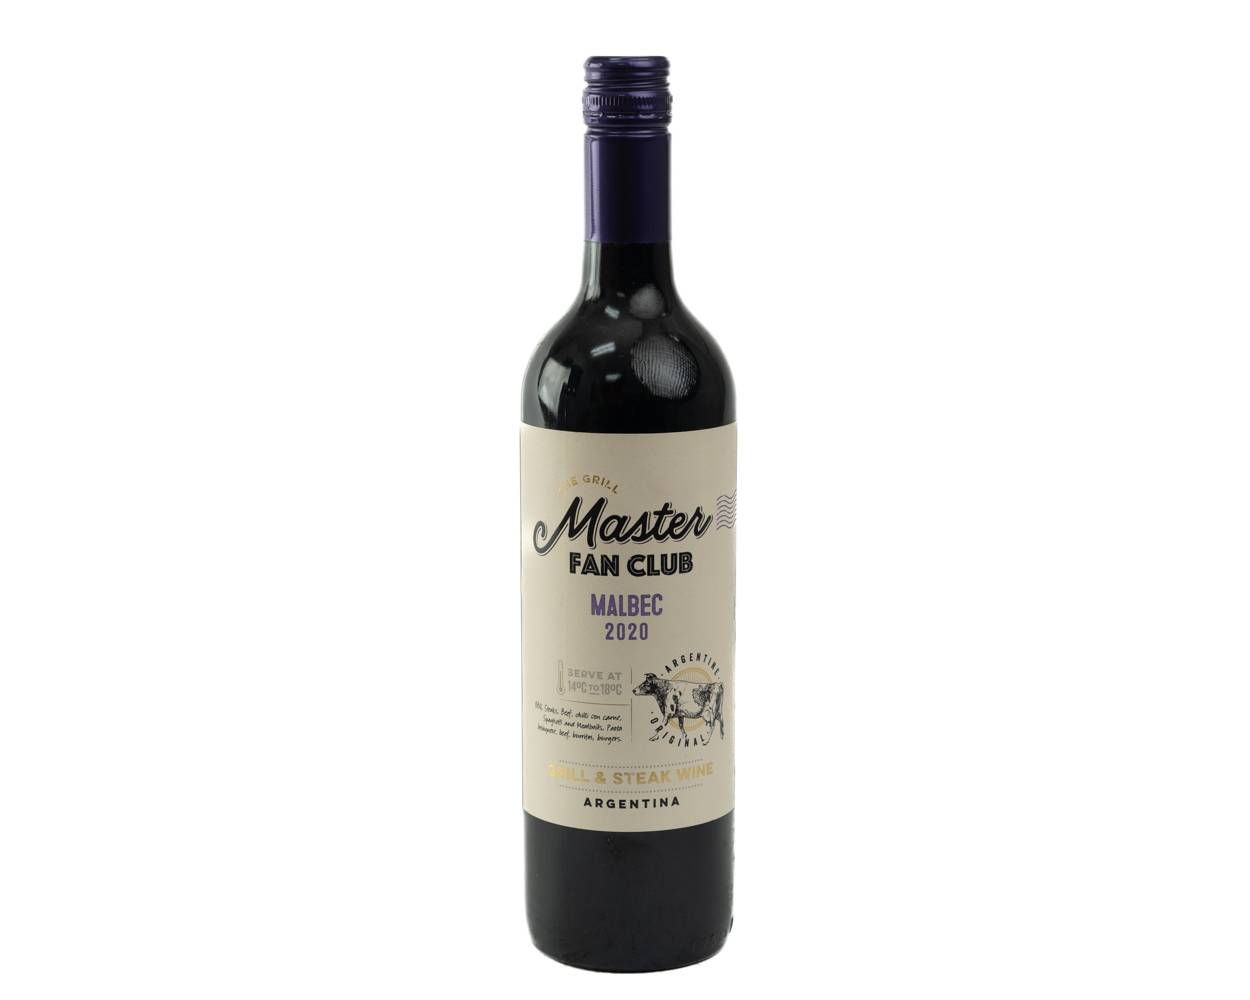 The grill master vino tinto malbec fan club (botella 750 ml)